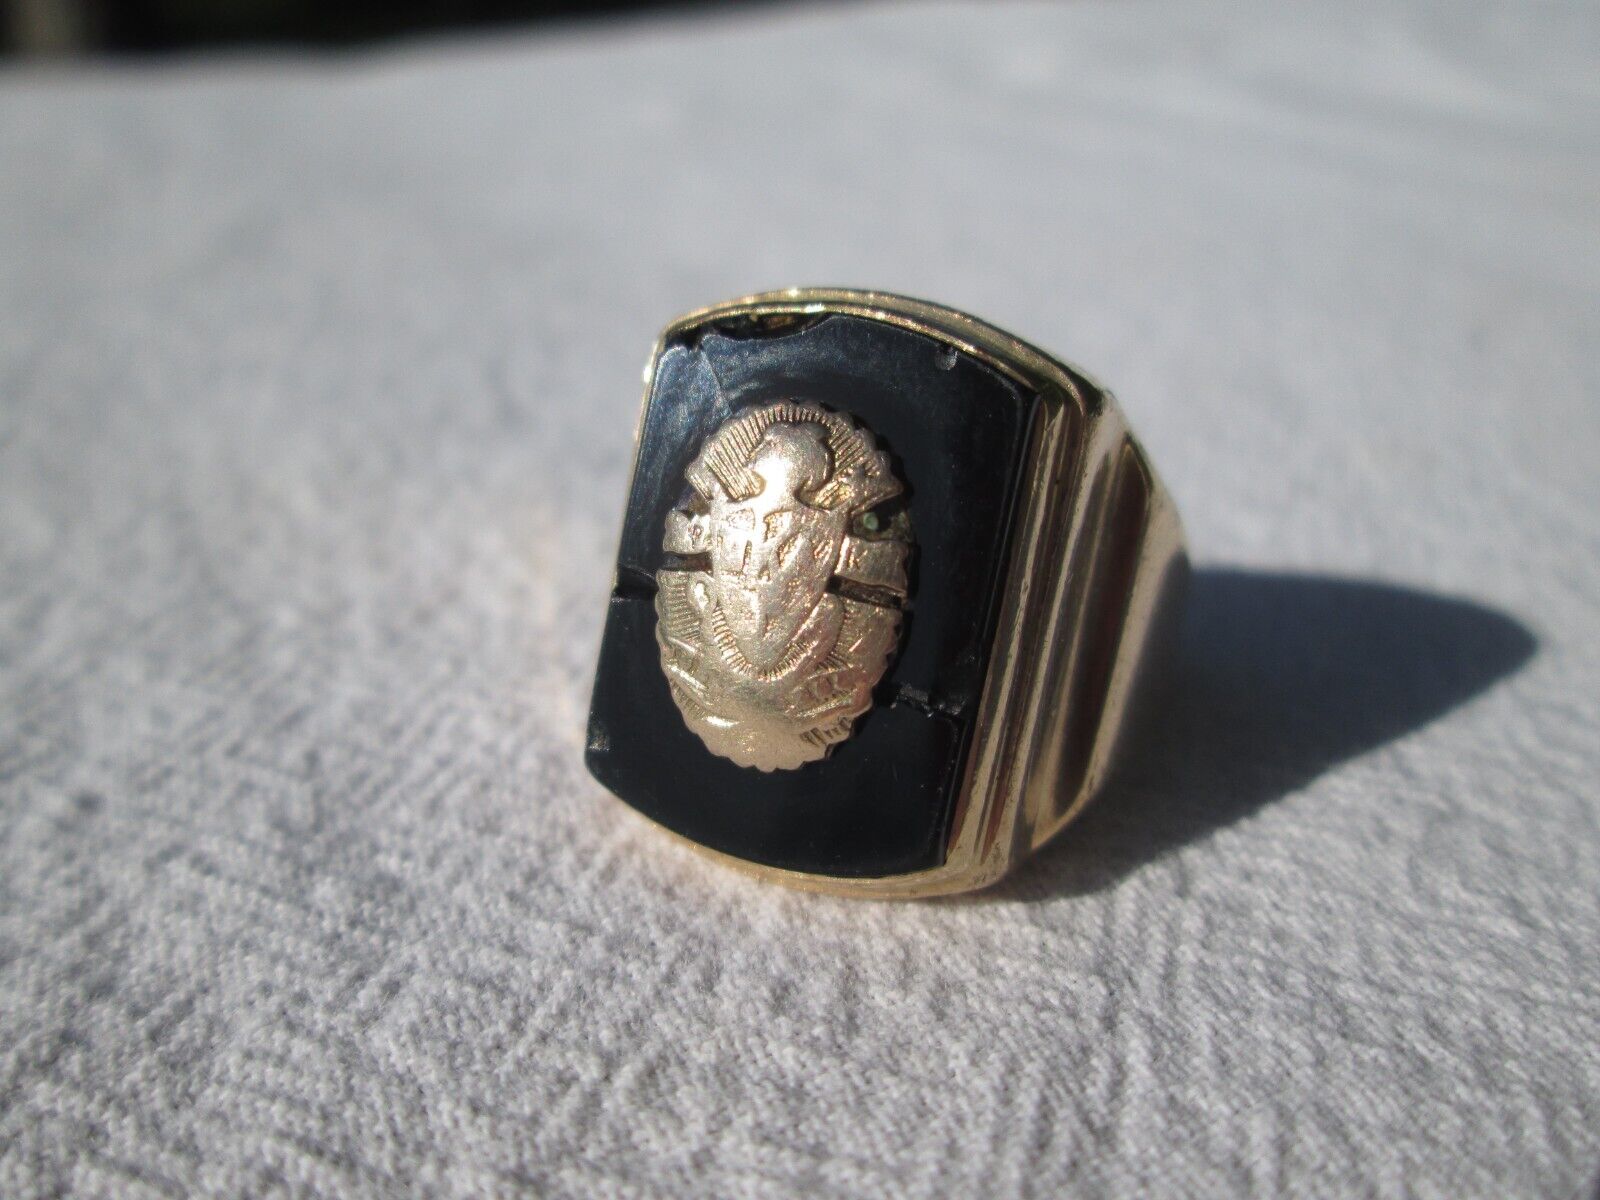 Balfour Mens 10K Gold Pi Kappa Alpha Fraternity Ring Size 10 Vintage 1940s 13.8g